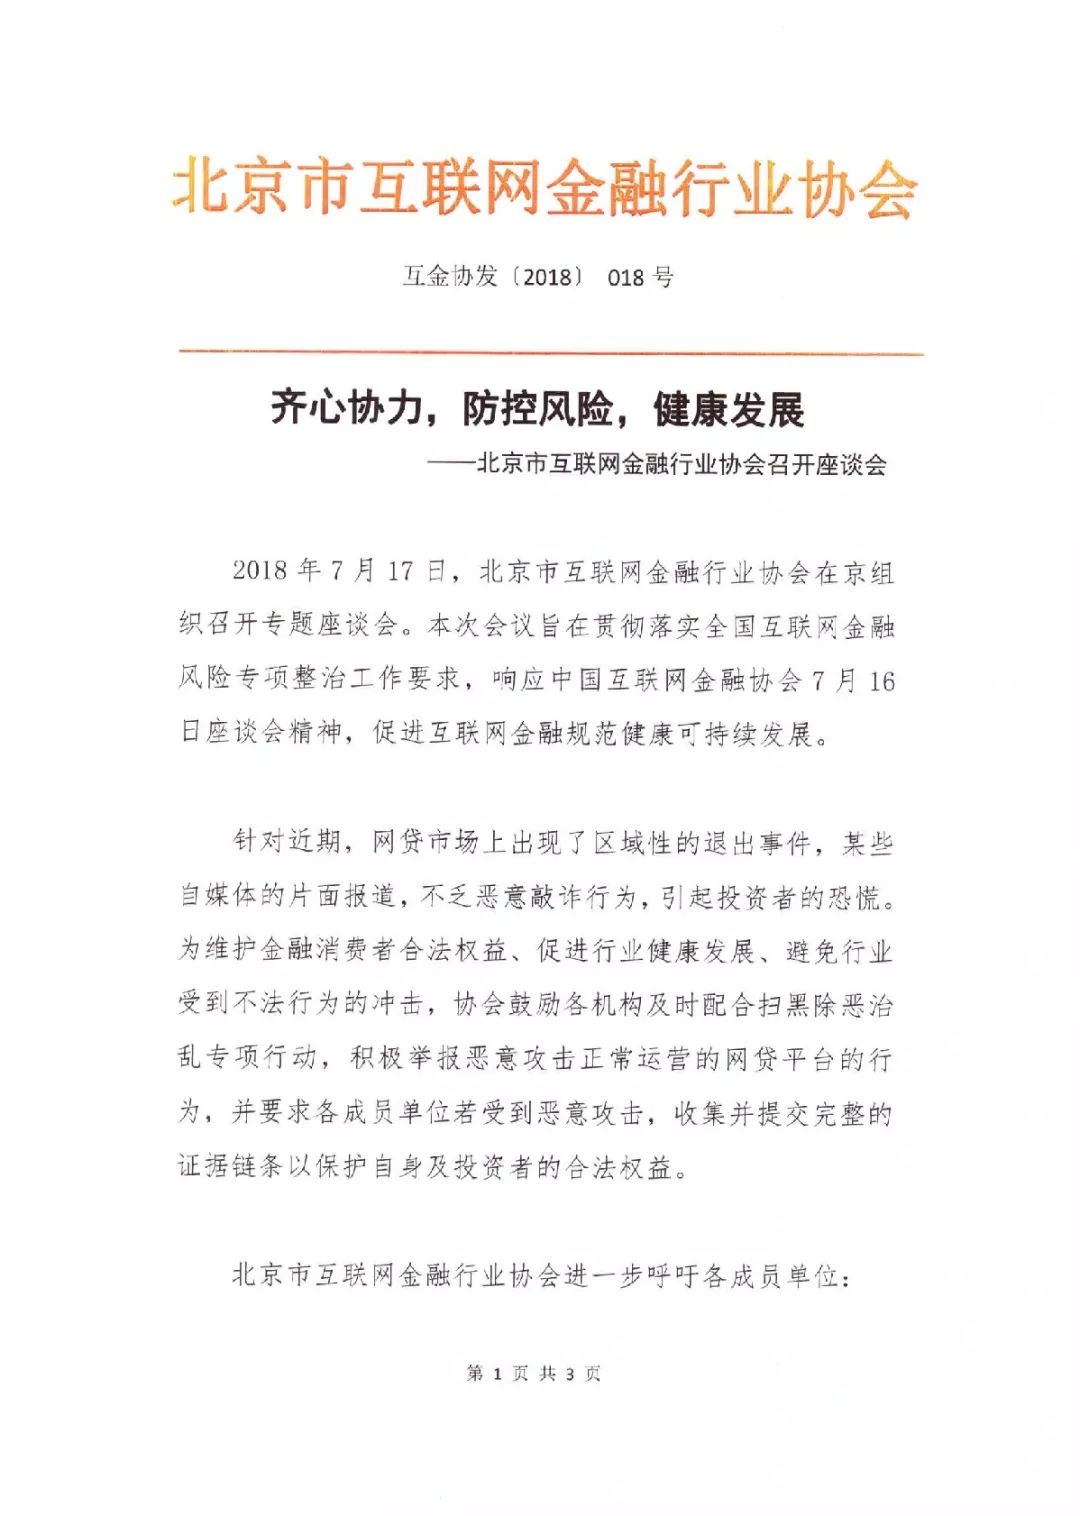 北京互金协会：恶意攻击正常运营的网贷平台，可积极举报